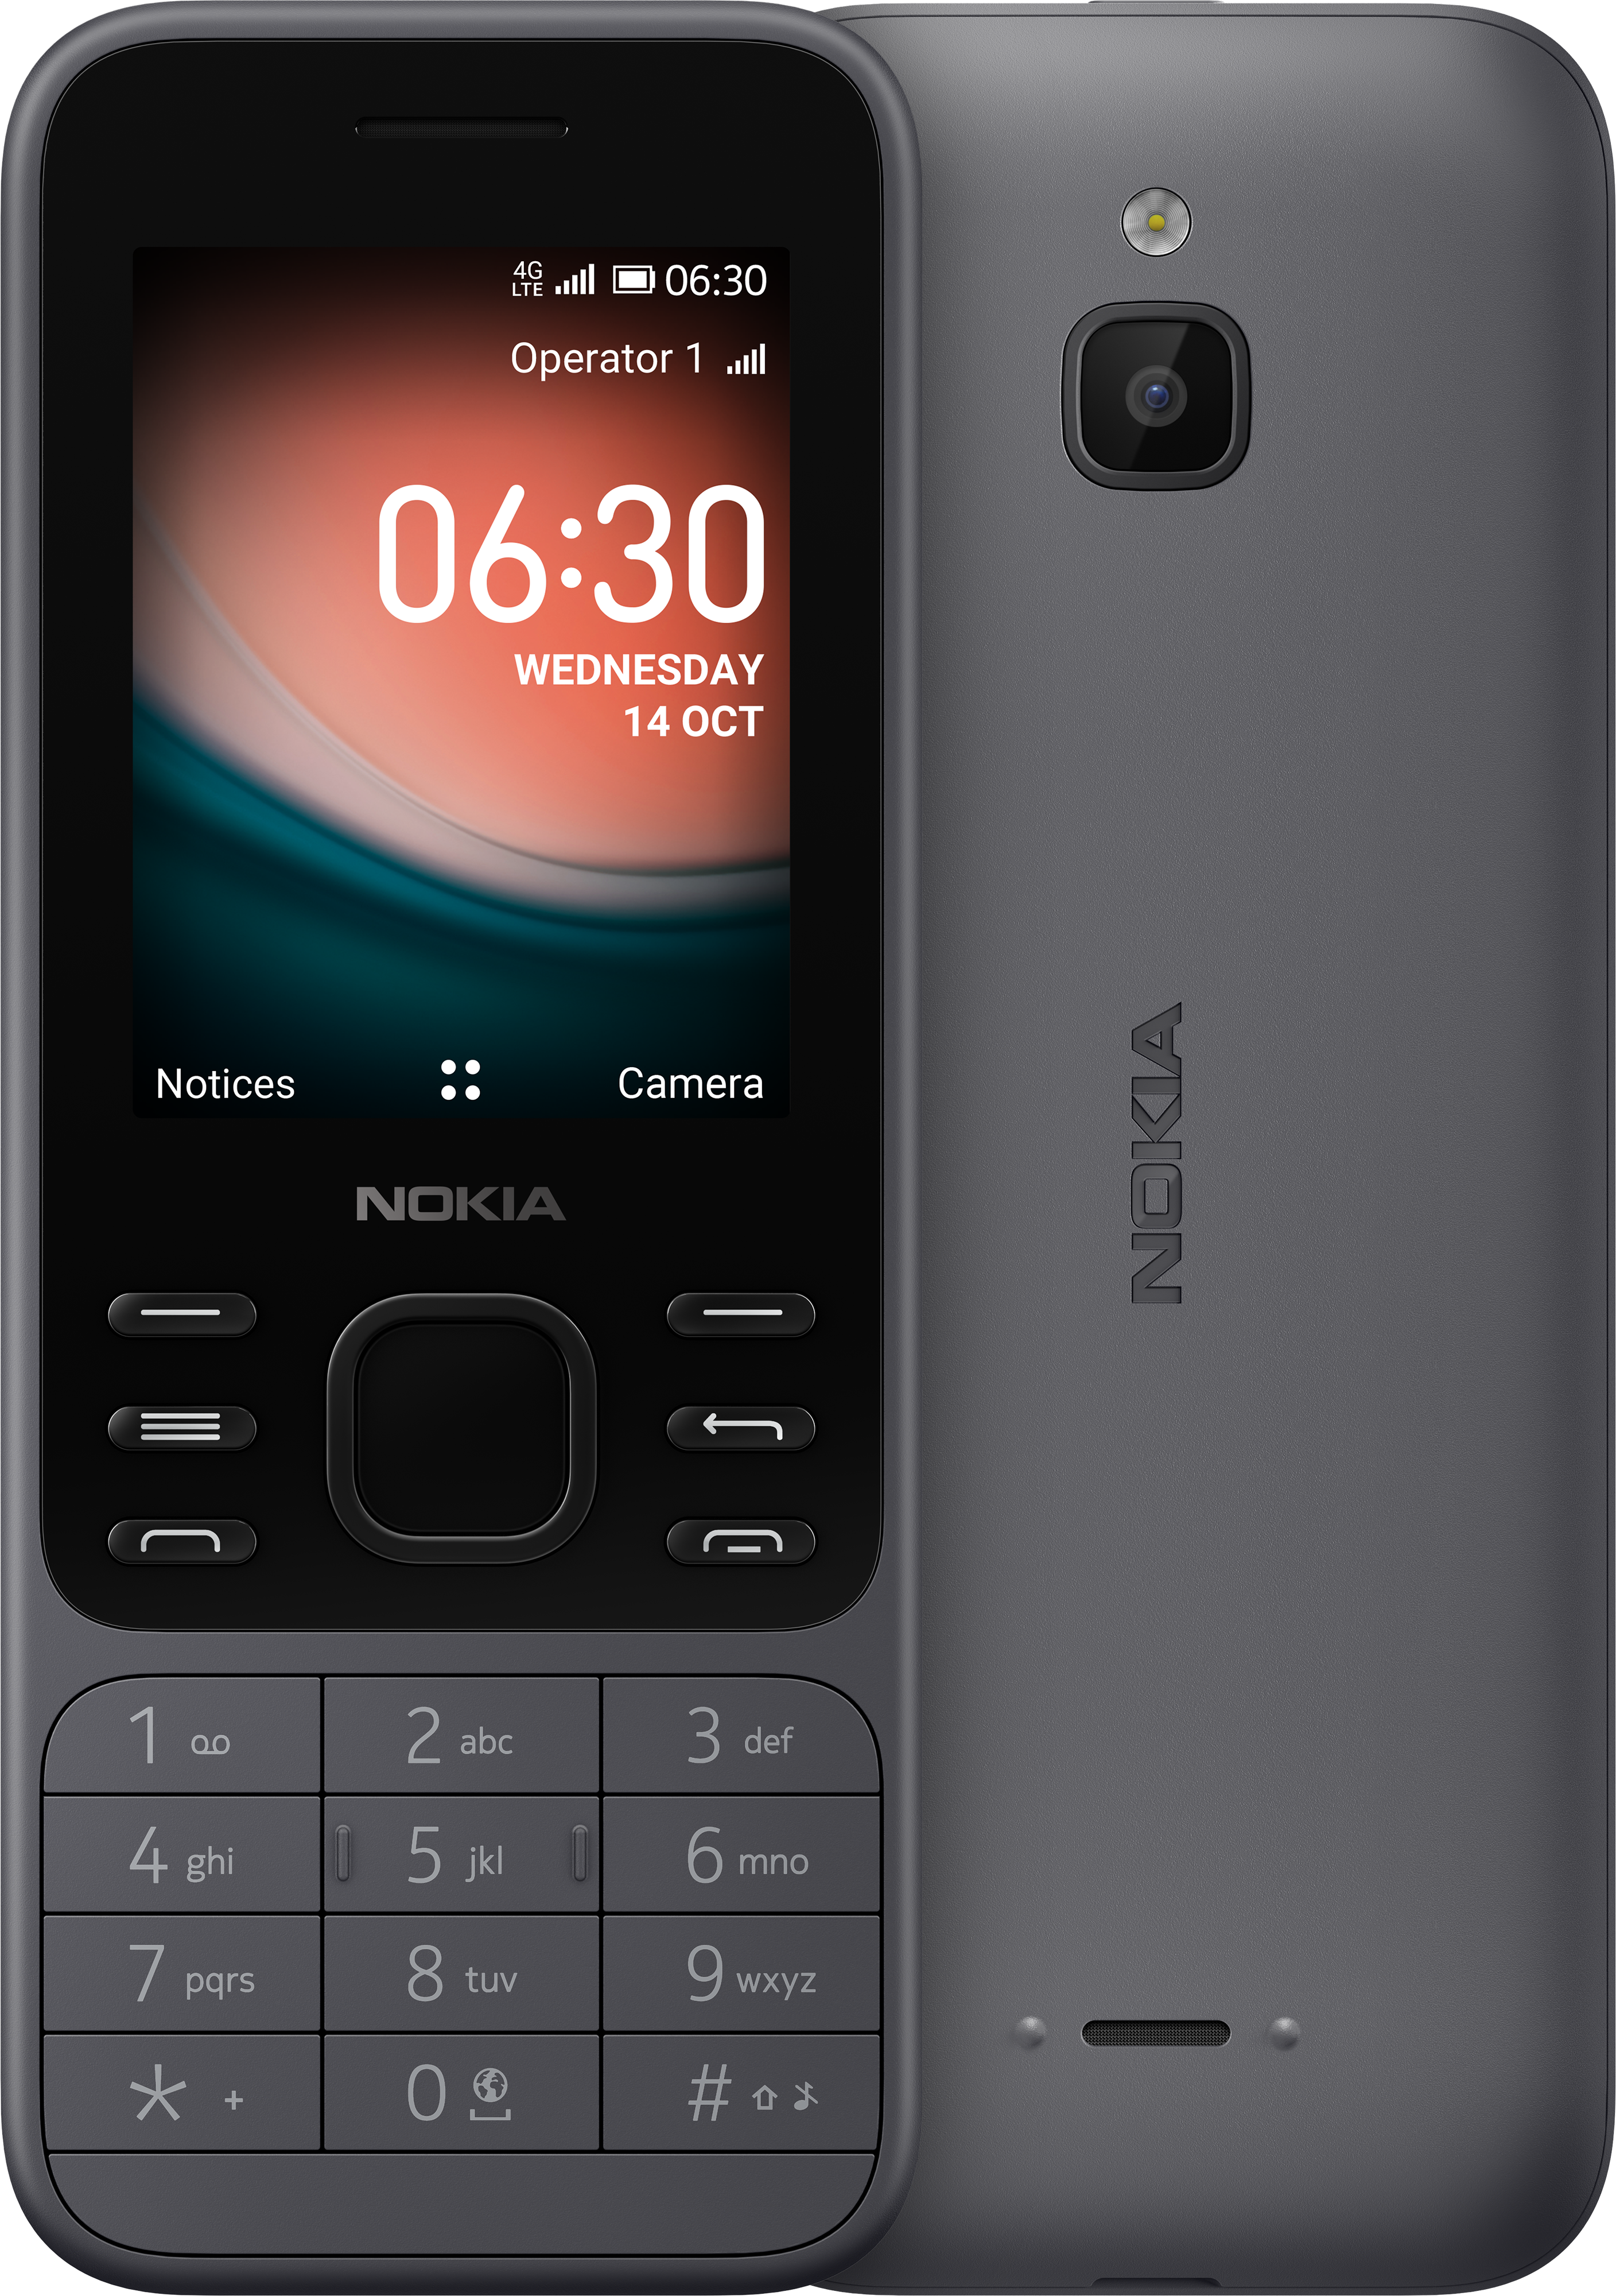 Móvil Nokia 6300 4G